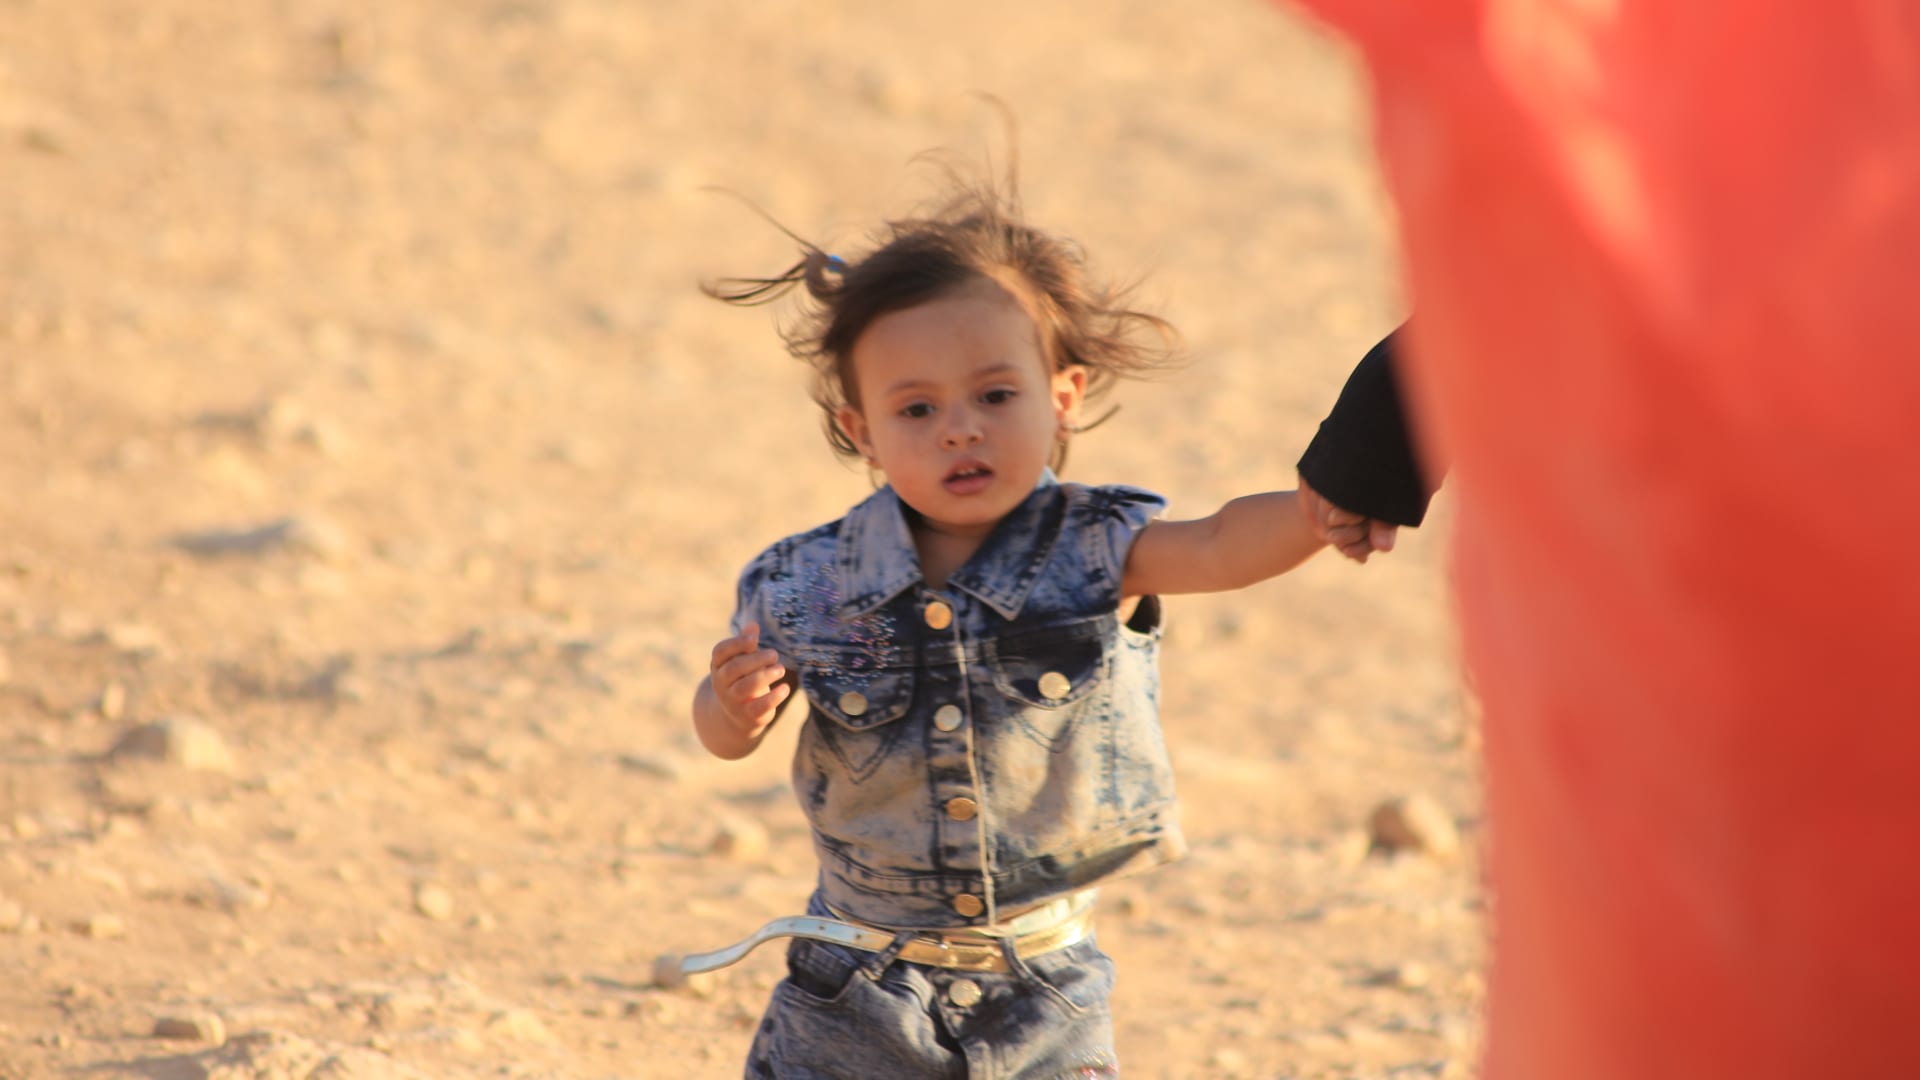 عائلات سورية تعود من الأردن إلى مناطق في جنوب البلاد بعد اتفاق خفض التصعيد